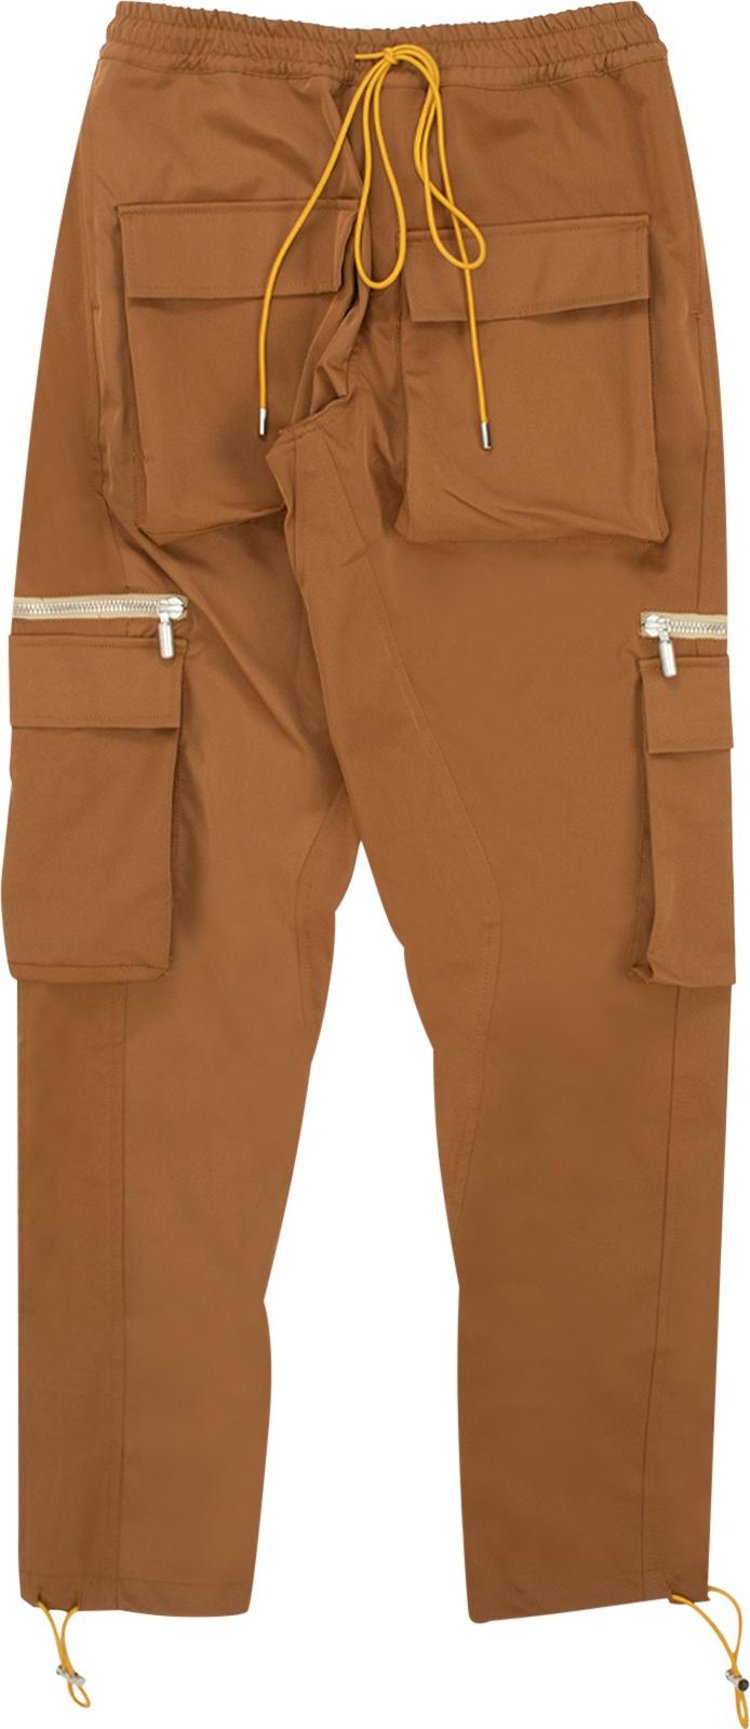 Брюки Rhude Classic Cargo Pants 'Brown', коричневый повседневные брюки adidas ub pnt cargo pockets industial style pants men brown коричневый